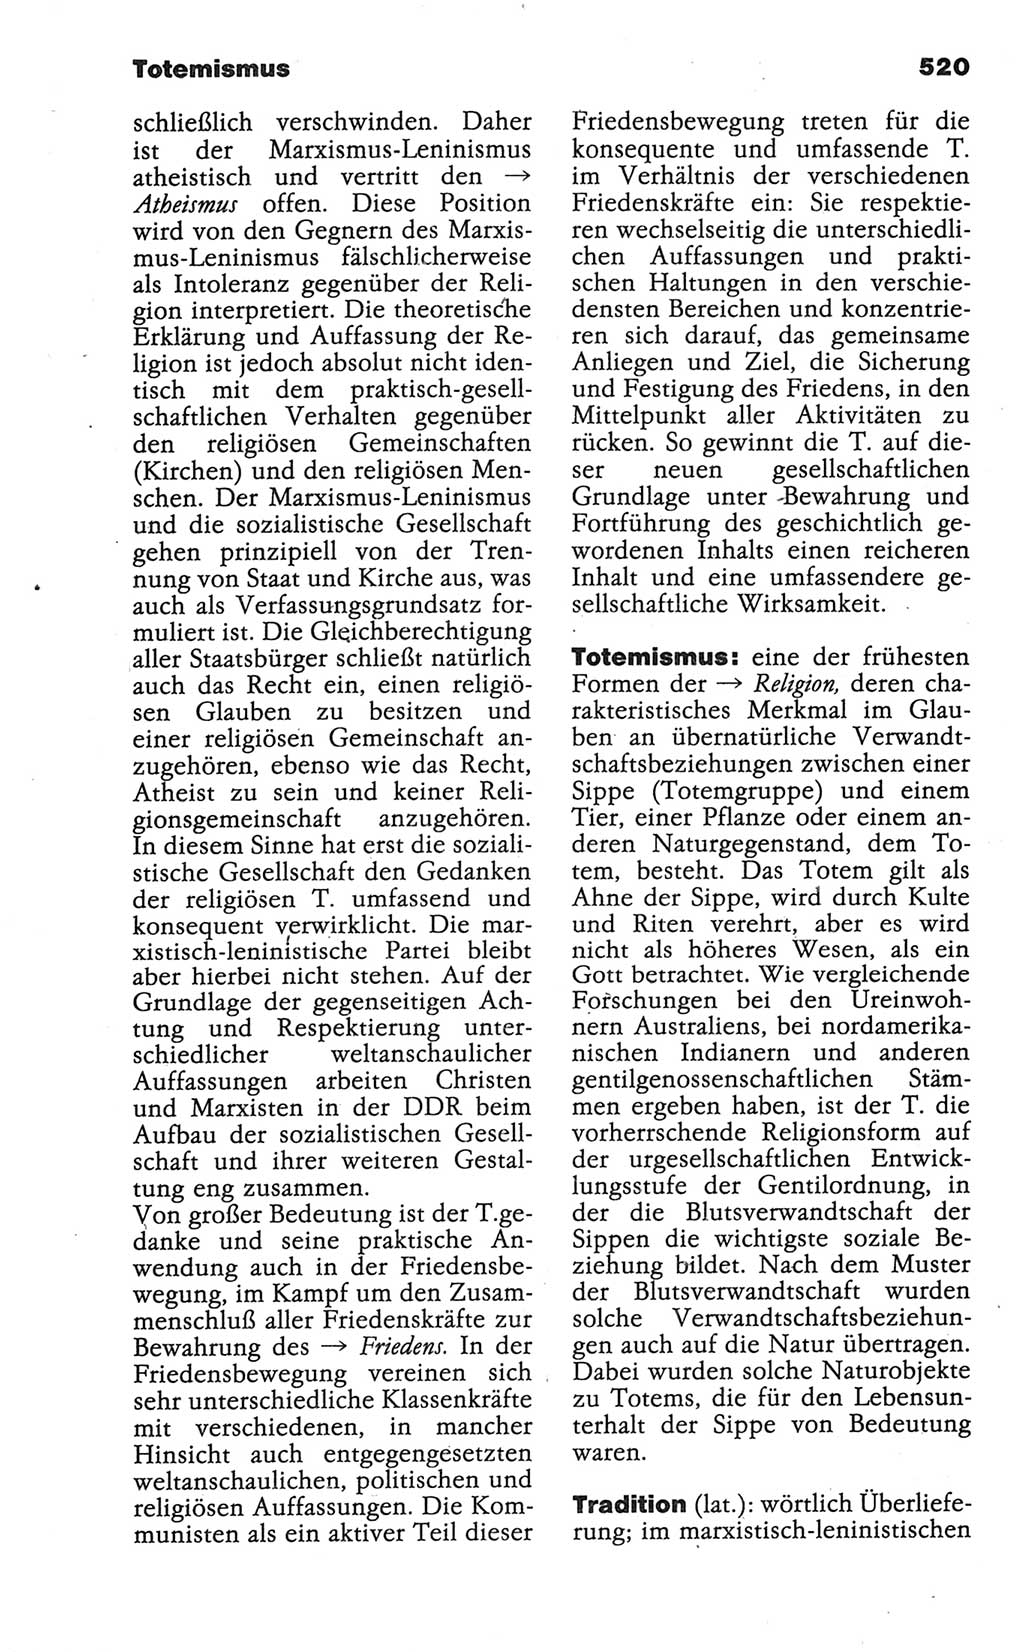 Wörterbuch der marxistisch-leninistischen Philosophie [Deutsche Demokratische Republik (DDR)] 1986, Seite 520 (Wb. ML Phil. DDR 1986, S. 520)